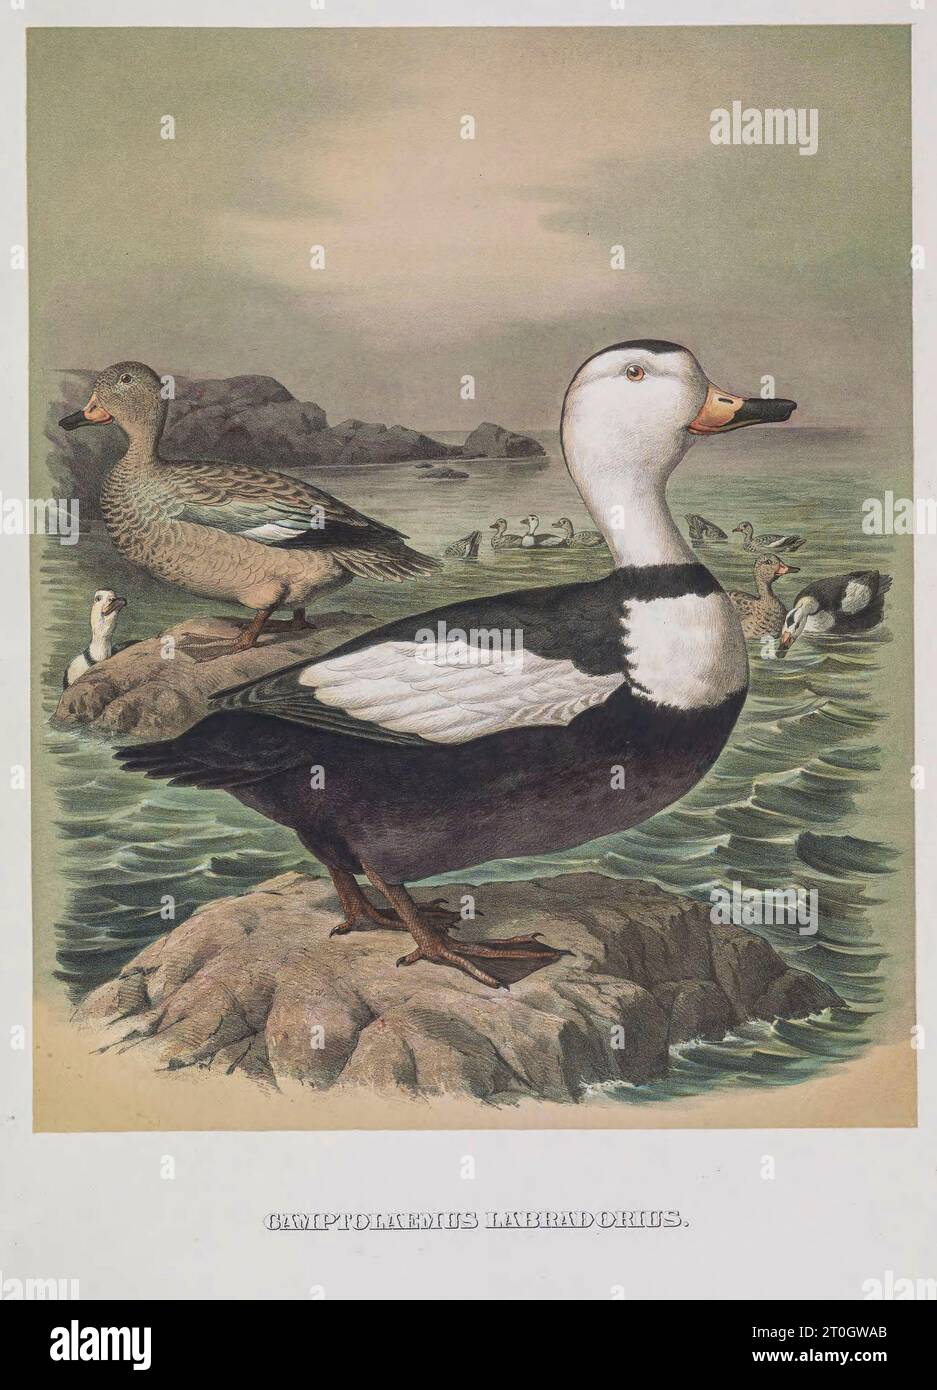 Canard du Labrador, illustration du 19e siècle Banque D'Images